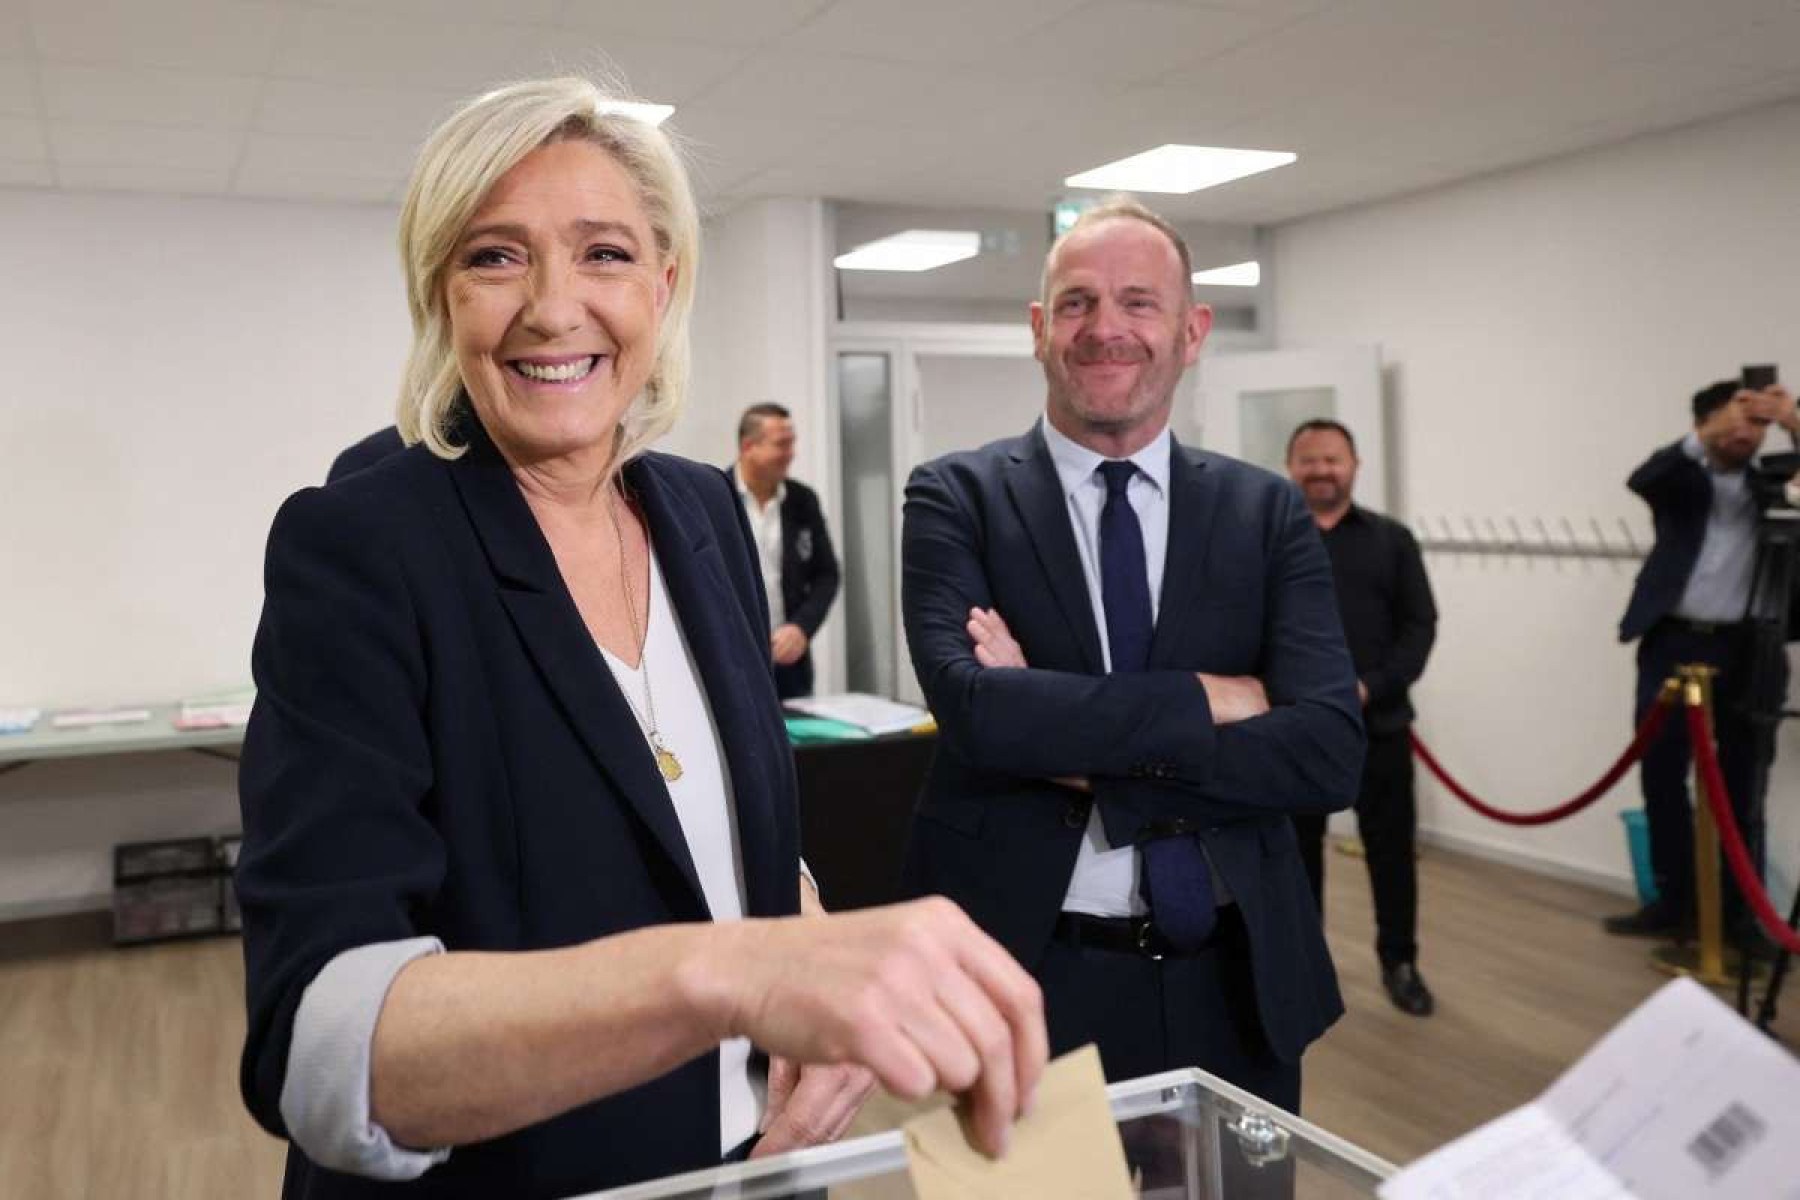 Extrema direita vence na França, conforme boca de urna, e fica em segundo na Alemanha